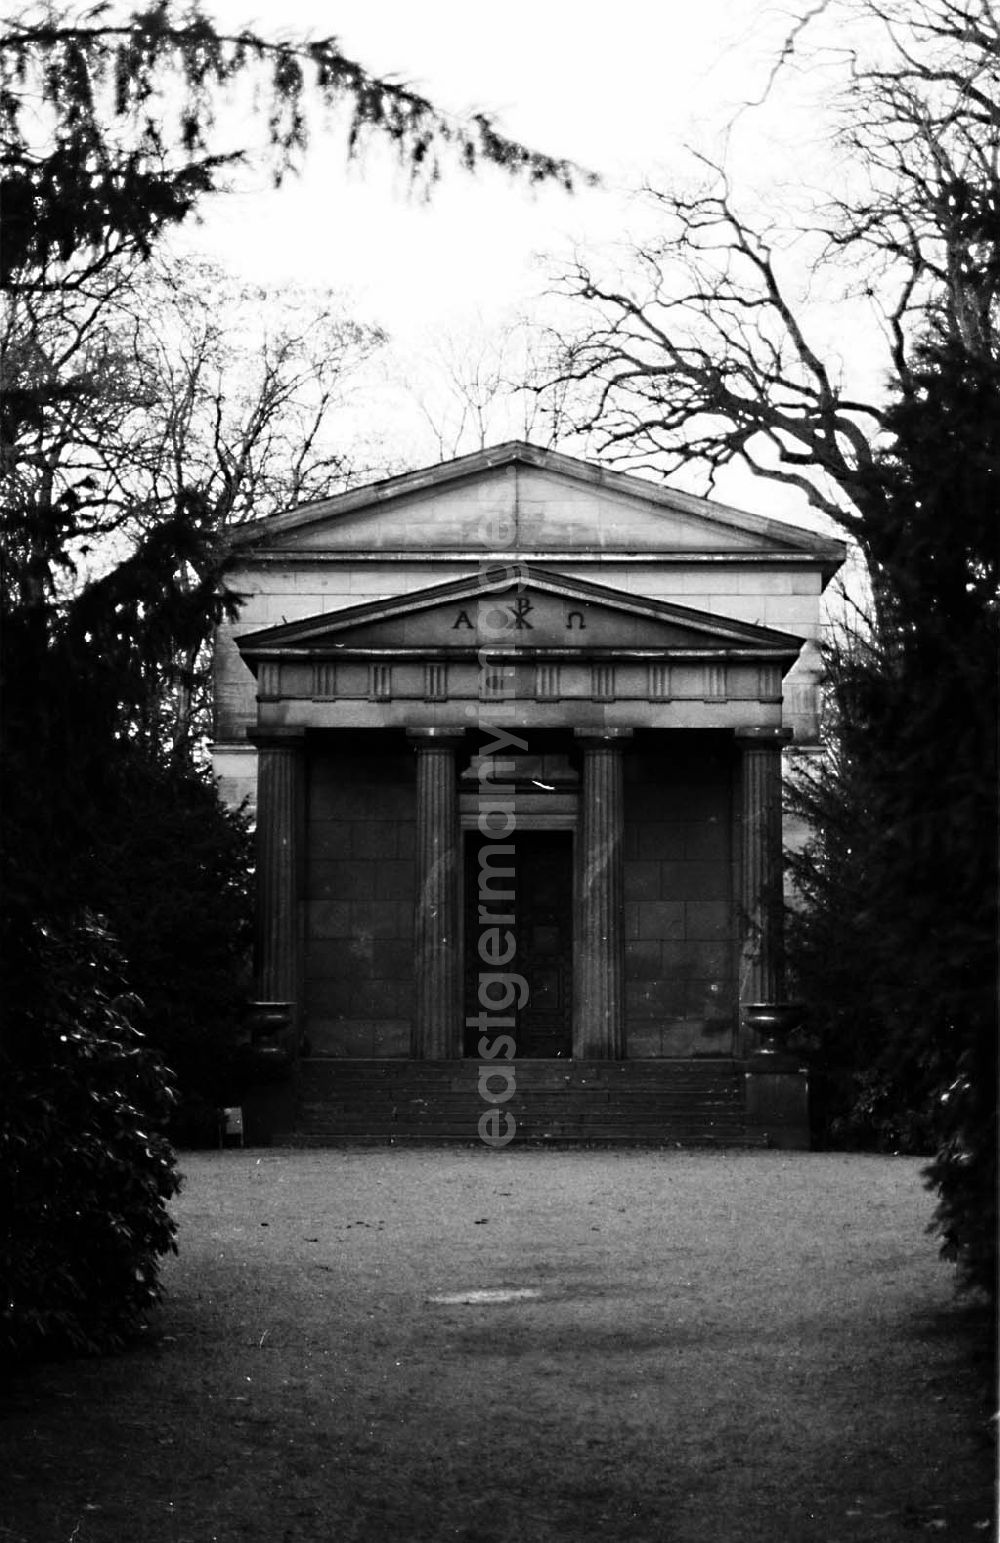 GDR image archive: Charlottenburg / Berlin - Mausoleum der Preußenkönige im Schloßpark Charlottenburg (Berlin) 6.12.1990 Winkler Umschlag Nr.:152